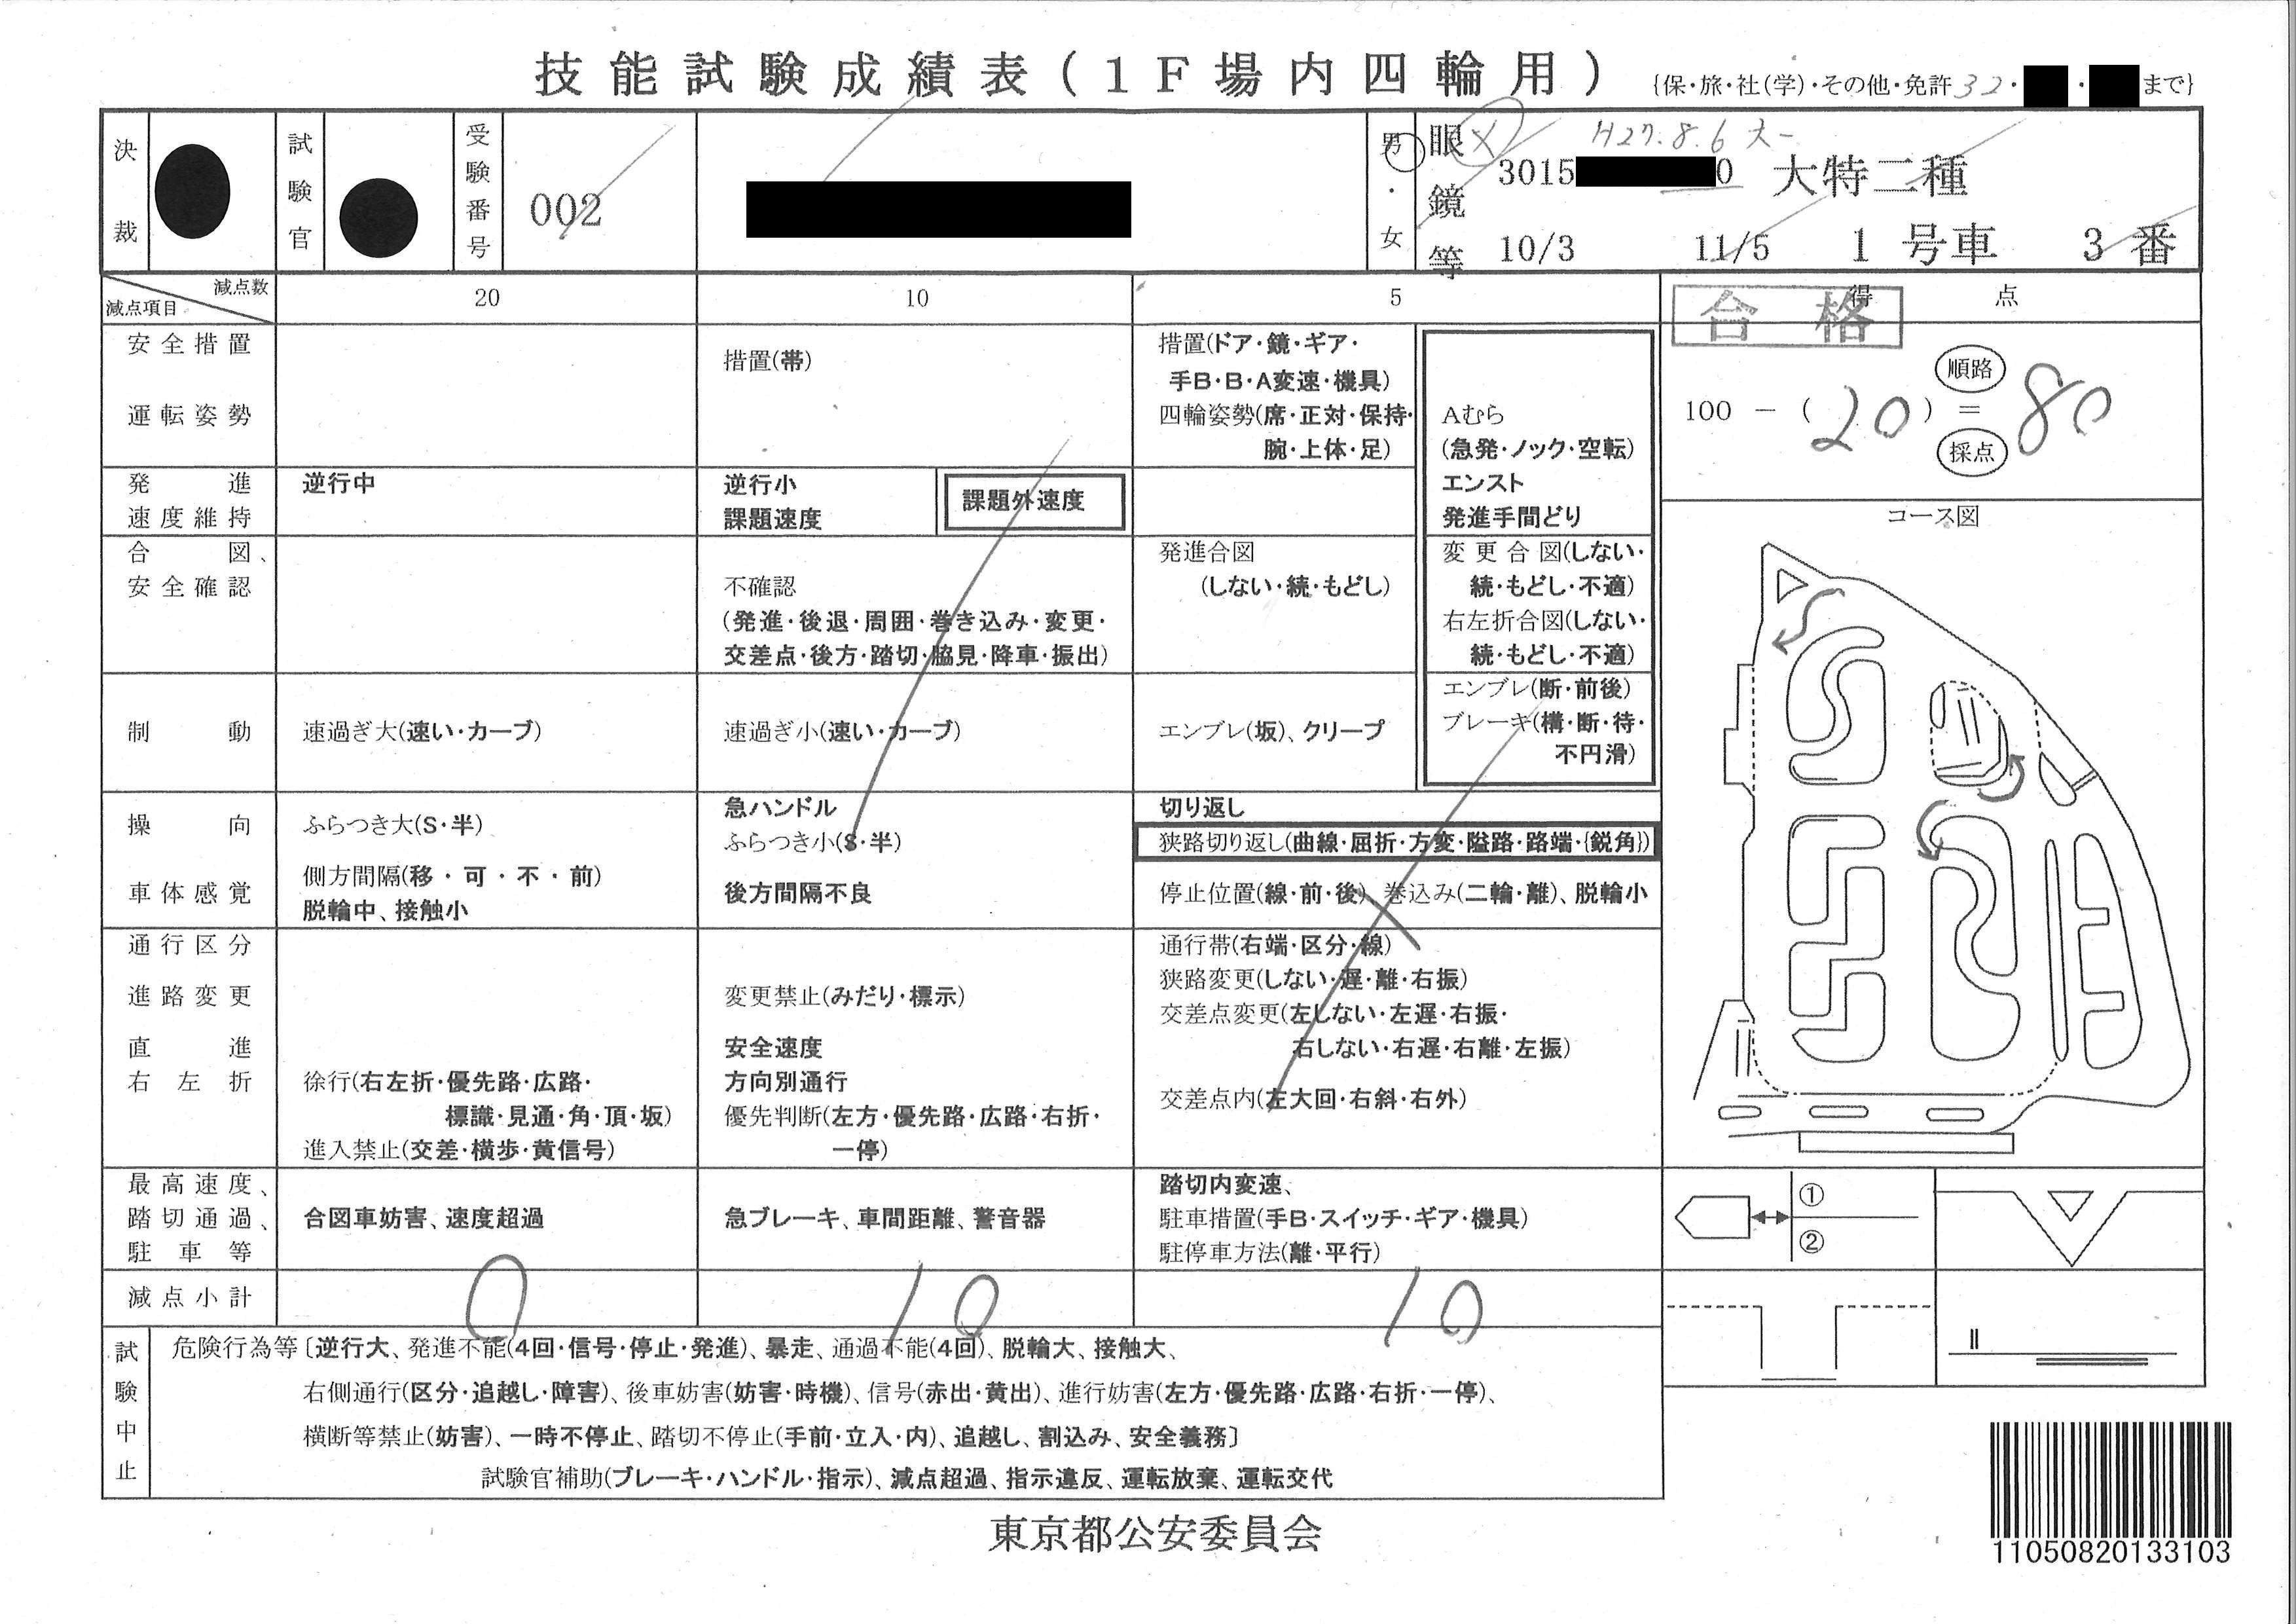 技能試験成績表 1F場内四輪用 2018/11/05 東京都公安委員会